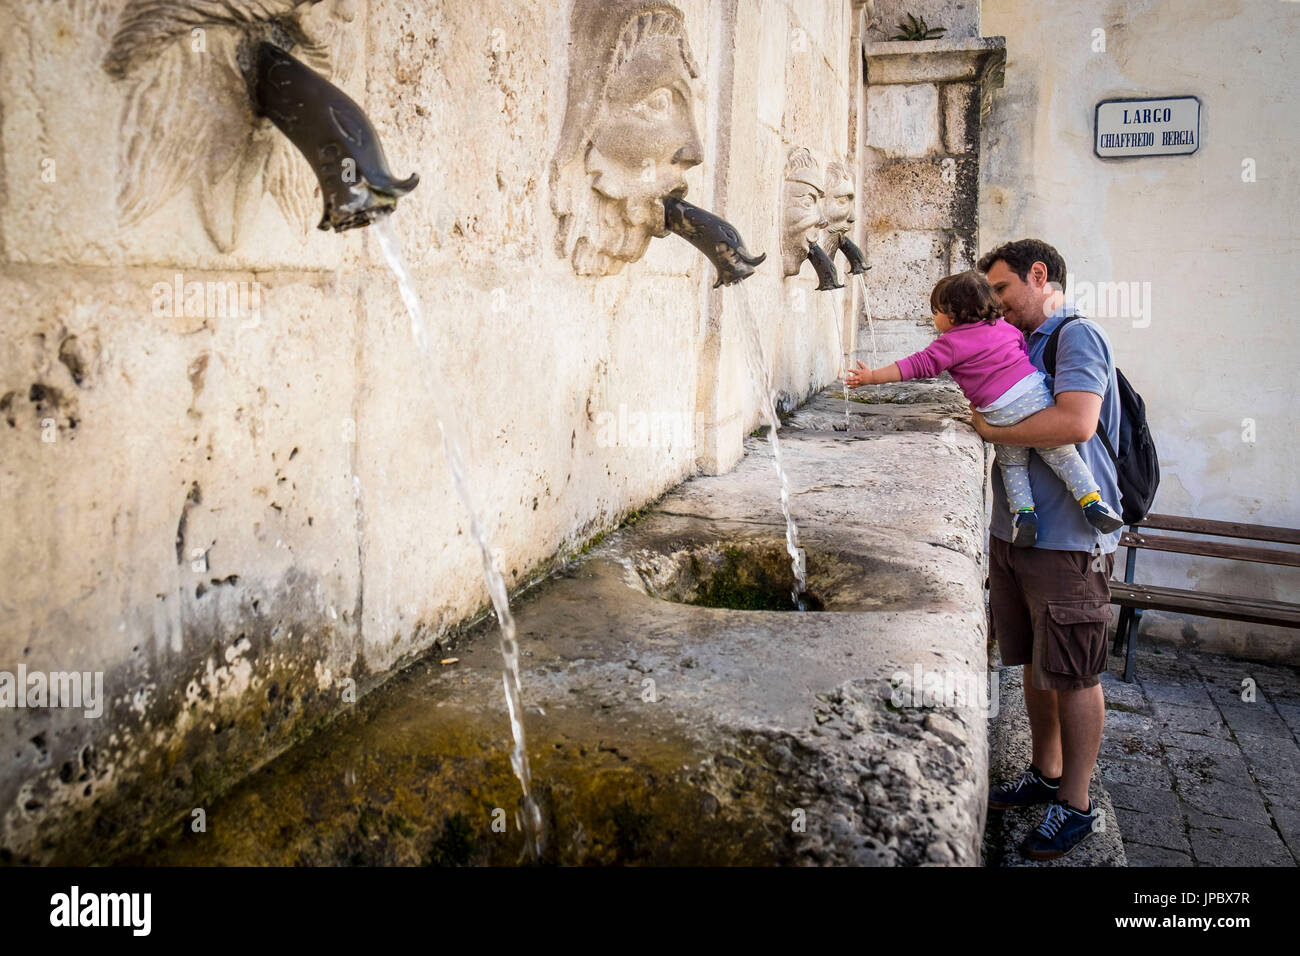 Scanno, Abruzzo, Central Italy, Europe. Refreshment at Sarracco fountain. Stock Photo